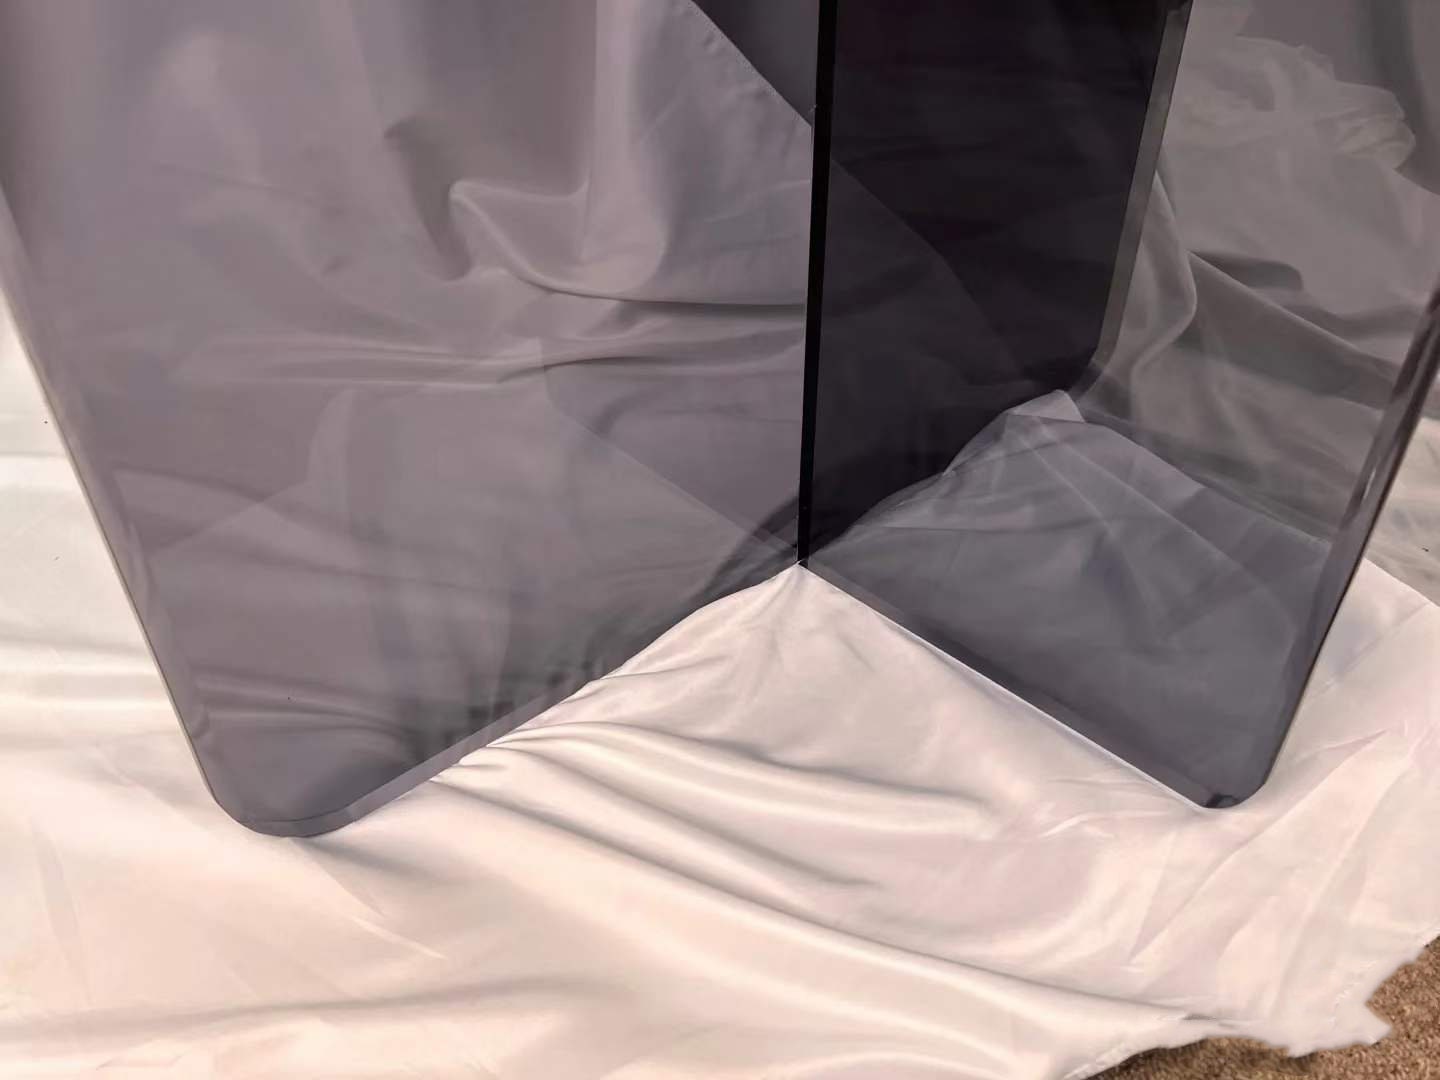 Pata de mesa de acrílico negro, pata de mesa transparente, pata de acrílico de losa, espesor: 2 cm (juego de 2)